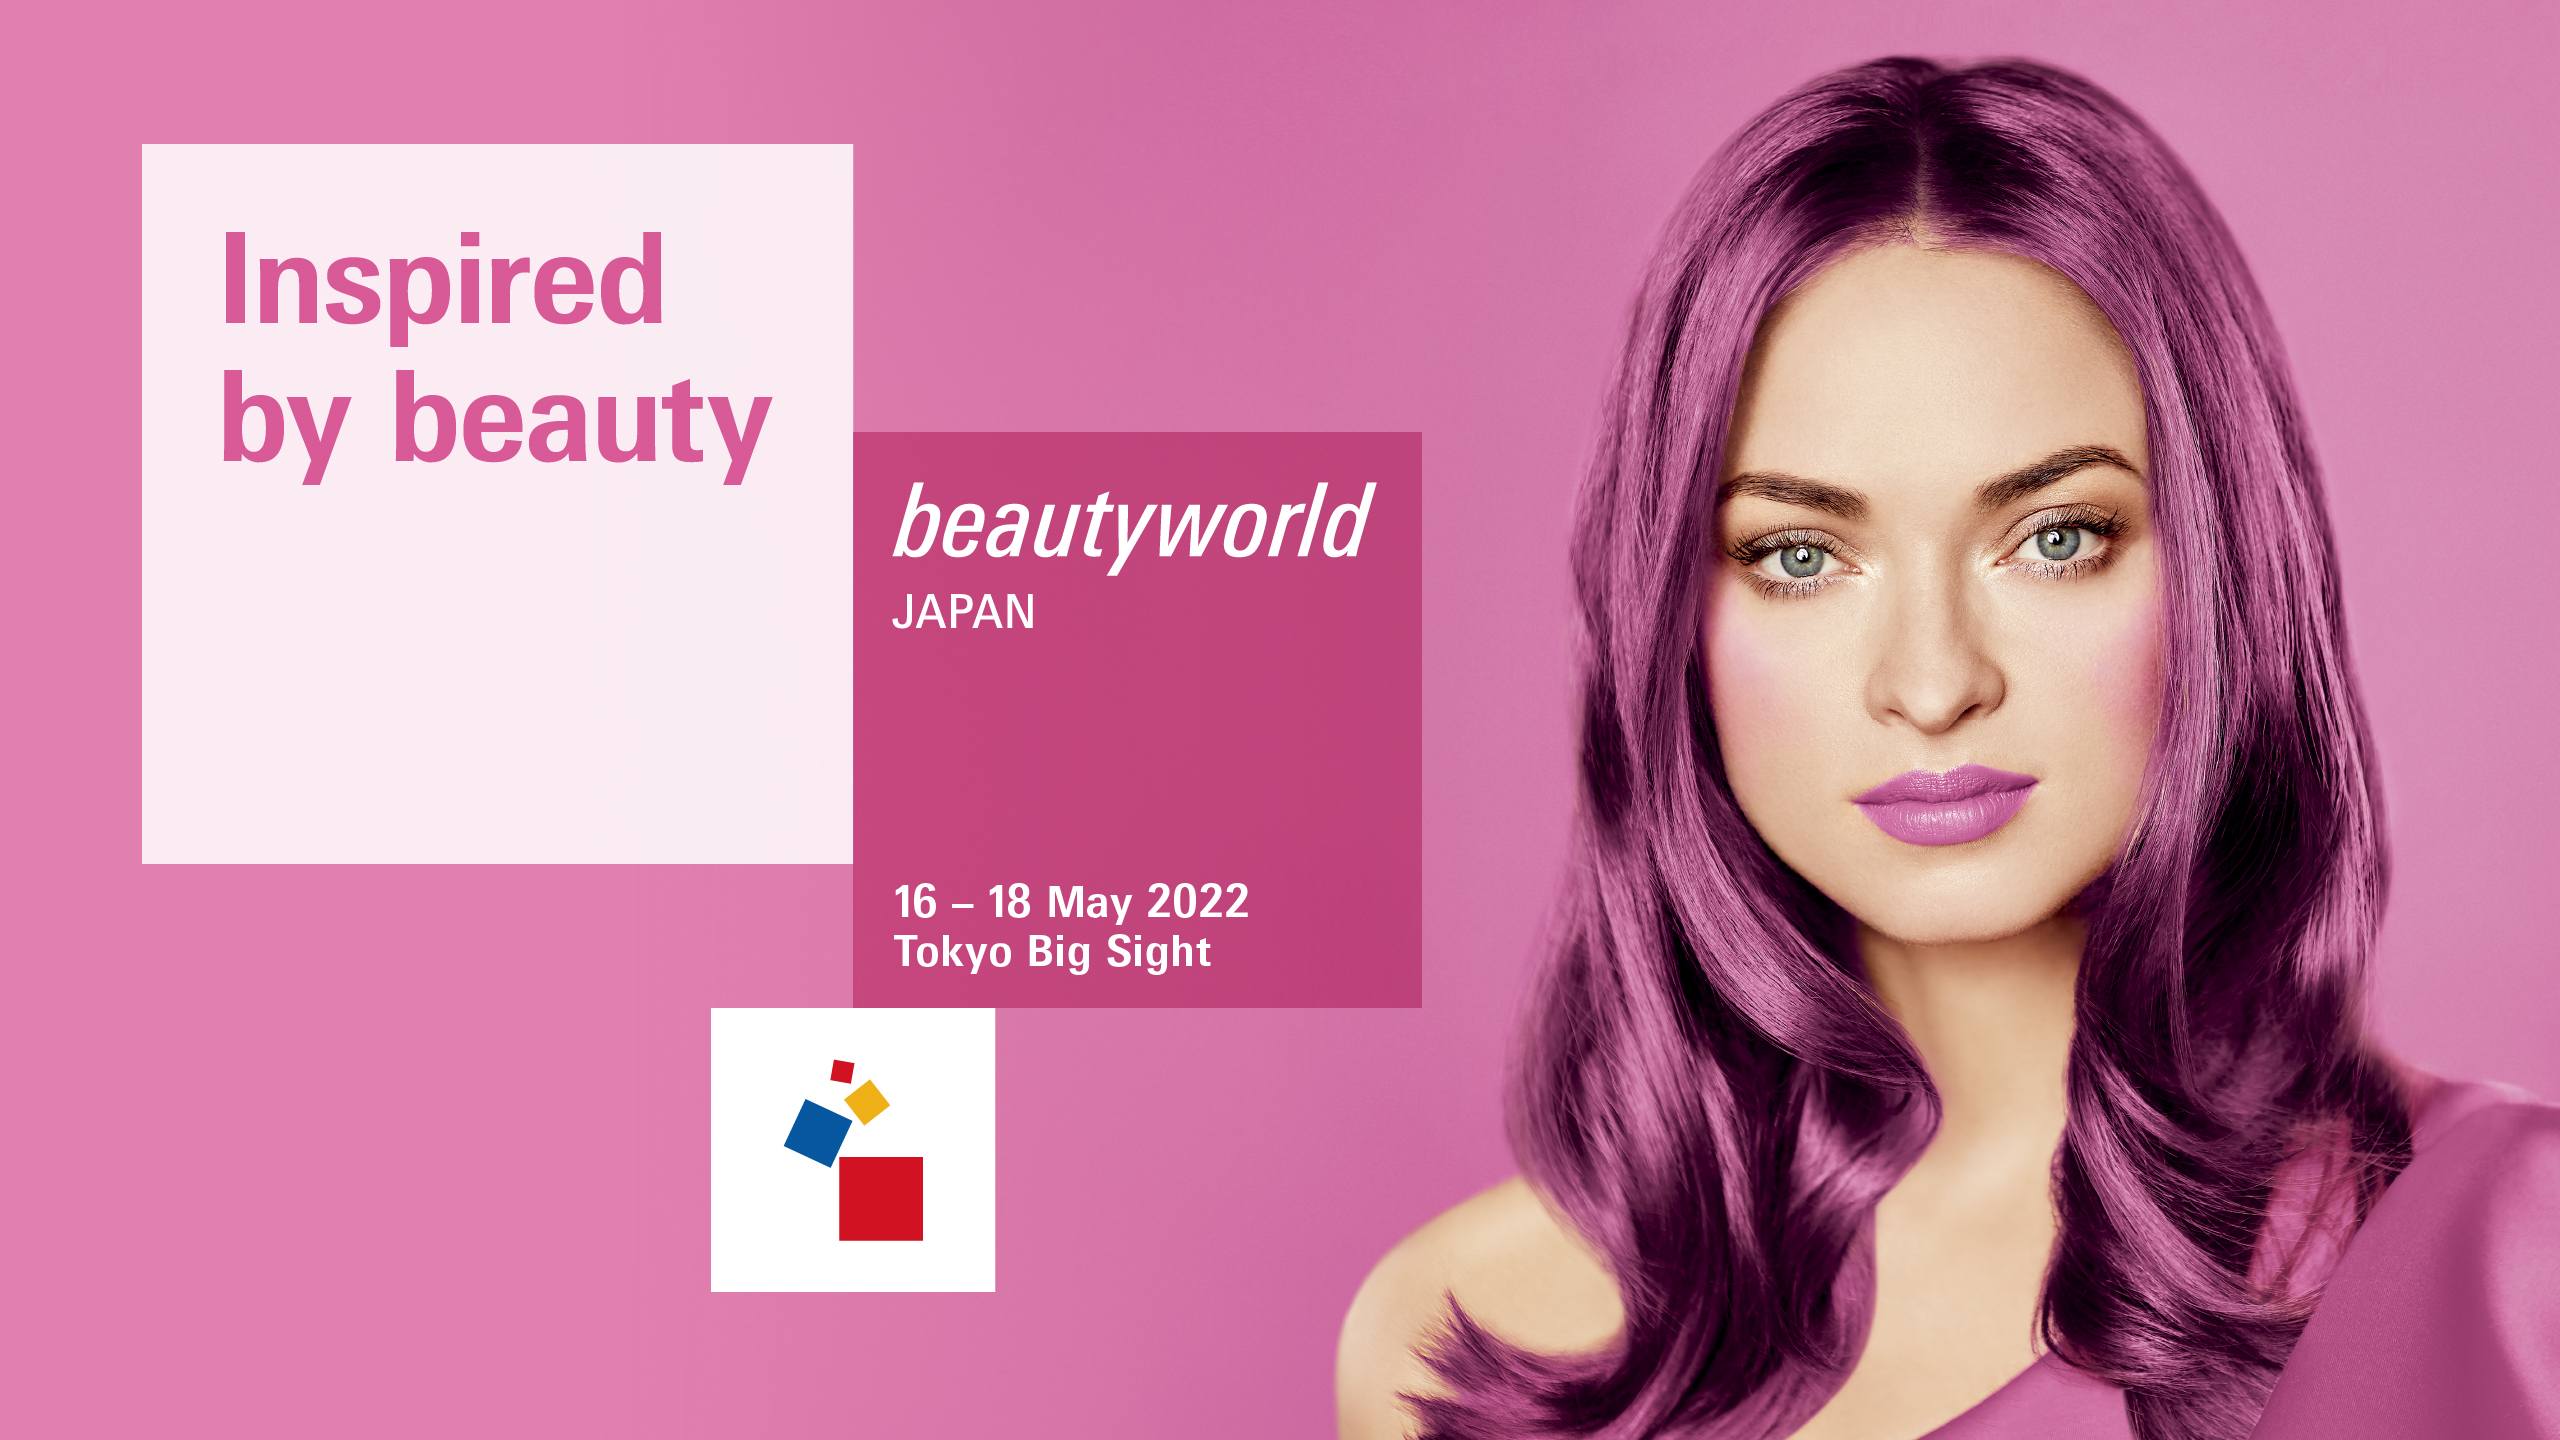 Beautyworld Worldwide